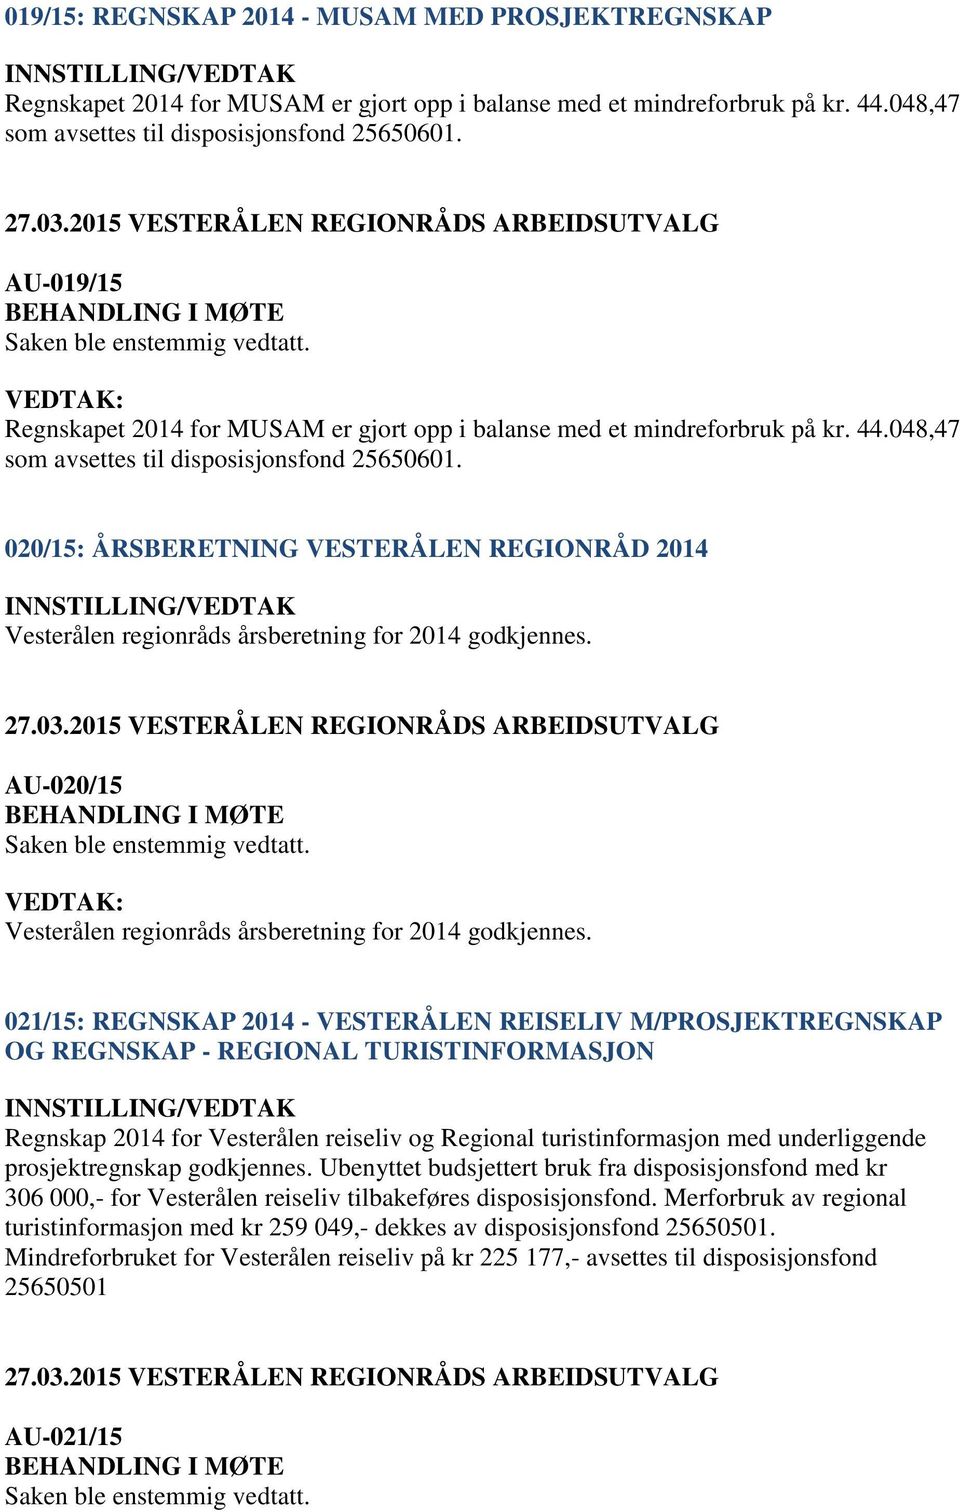 020/15: ÅRSBERETNING VESTERÅLEN REGIONRÅD 2014 Vesterålen regionråds årsberetning for 2014 godkjennes. AU-020/15 Vesterålen regionråds årsberetning for 2014 godkjennes.